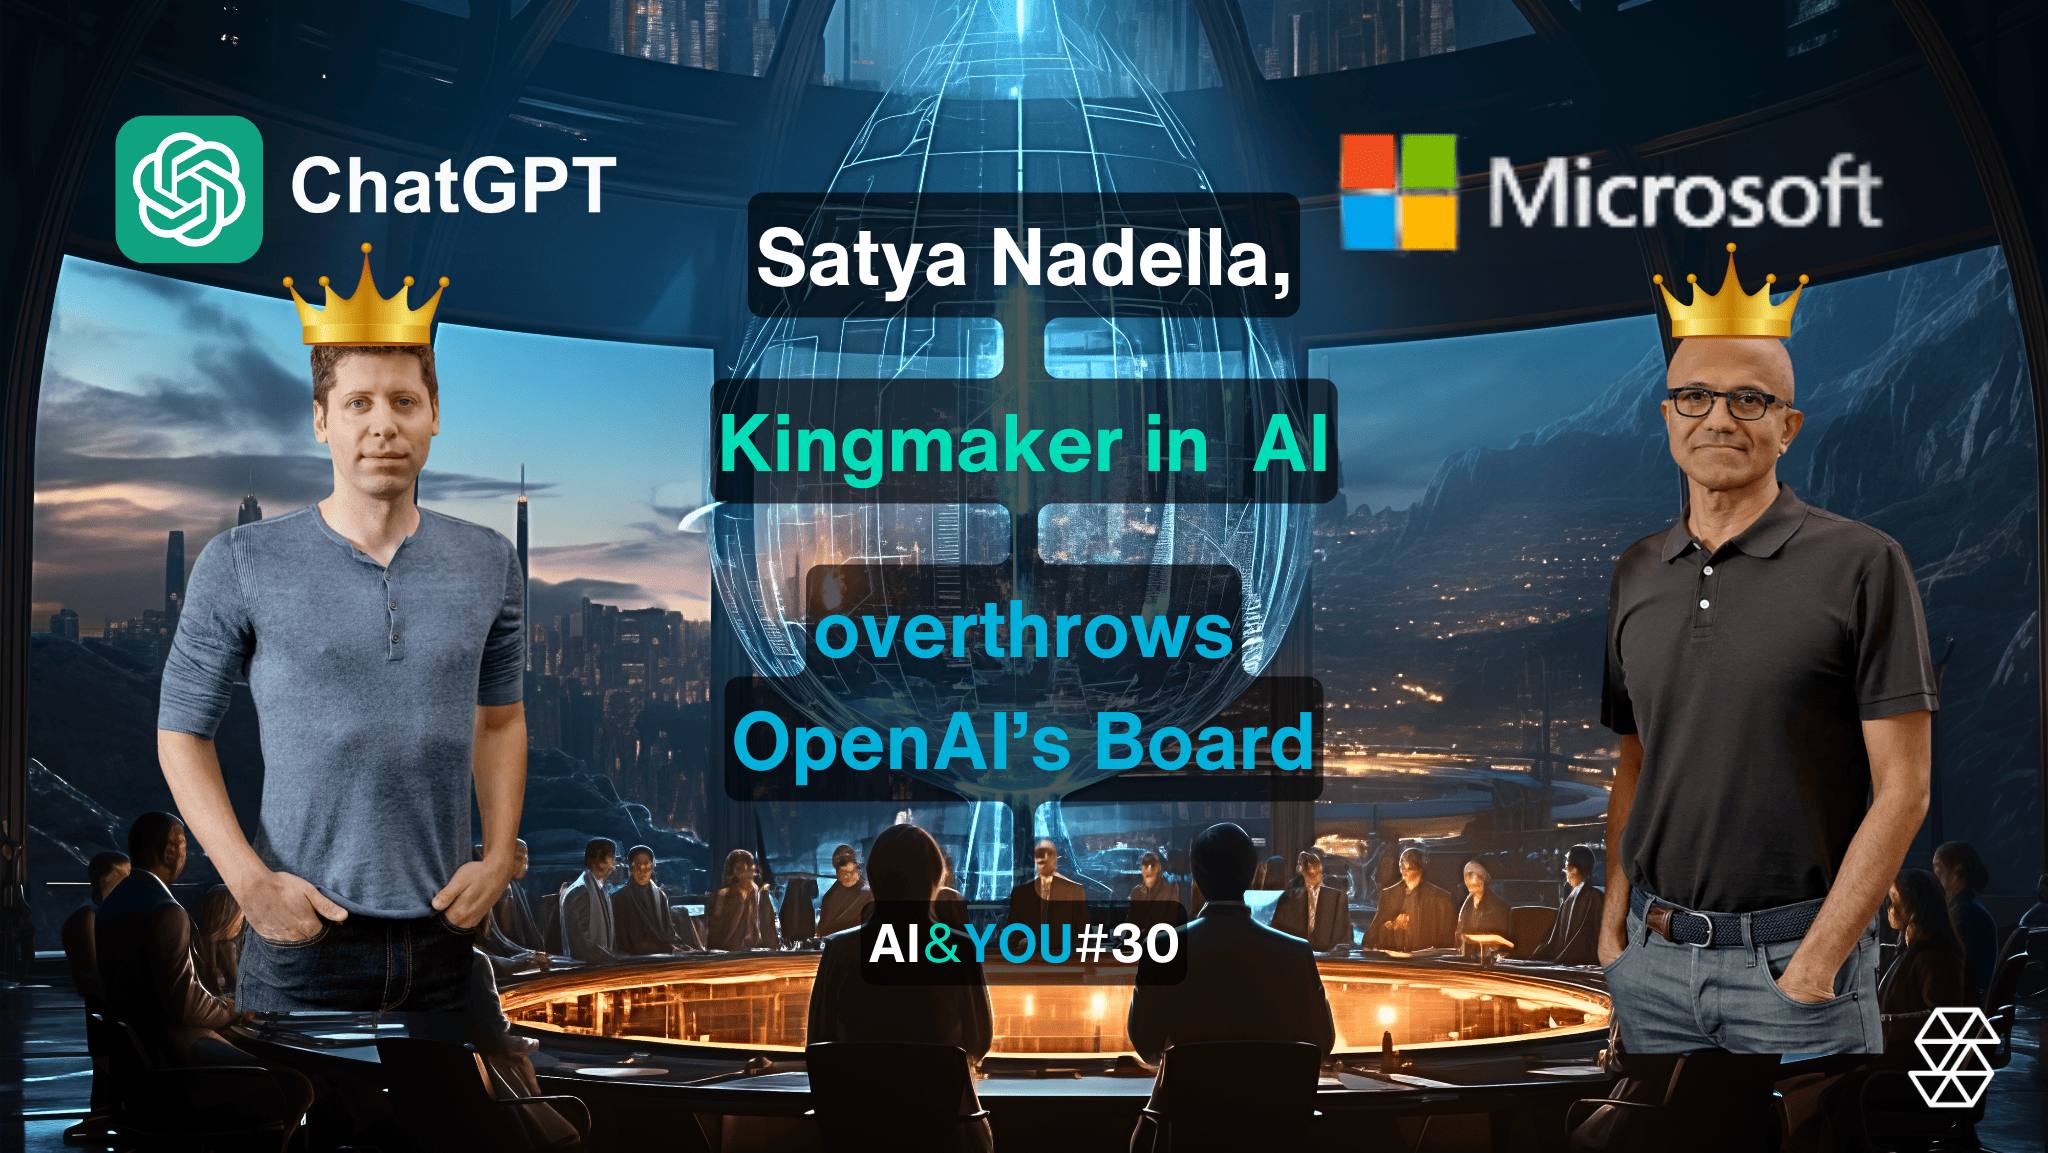 AI&YOU#30: Satya Nadella faz de Kingmaker no mundo da IA e derruba a antiga direção da Open AI